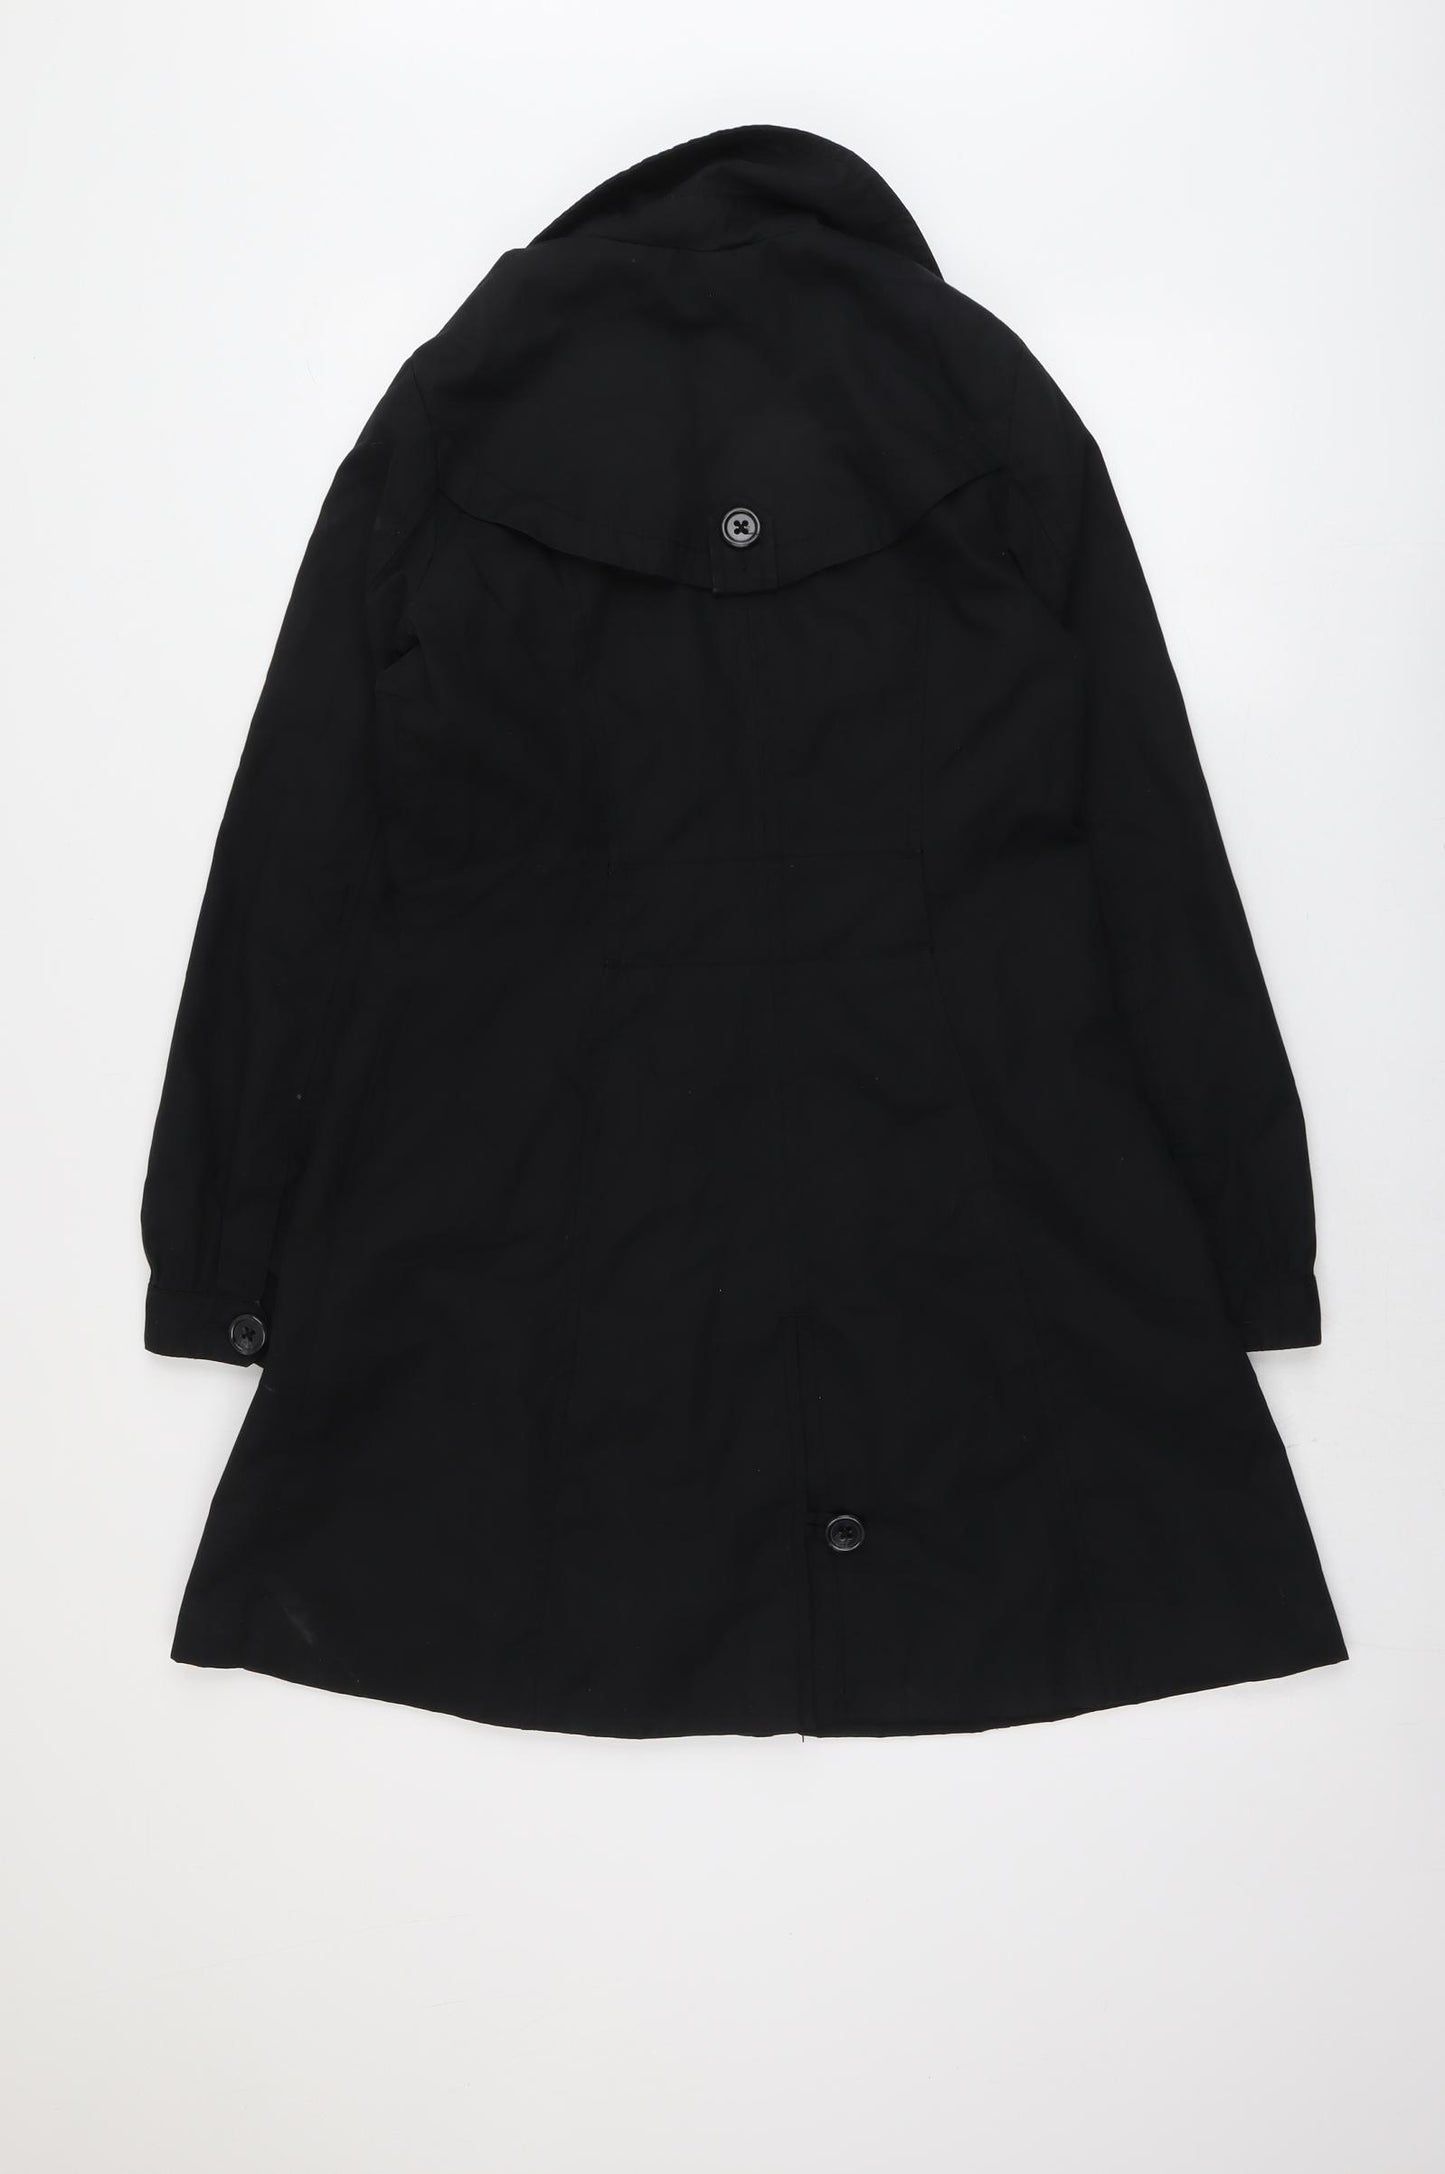 H&M Womens Black Pea Coat Coat Size 10 Button